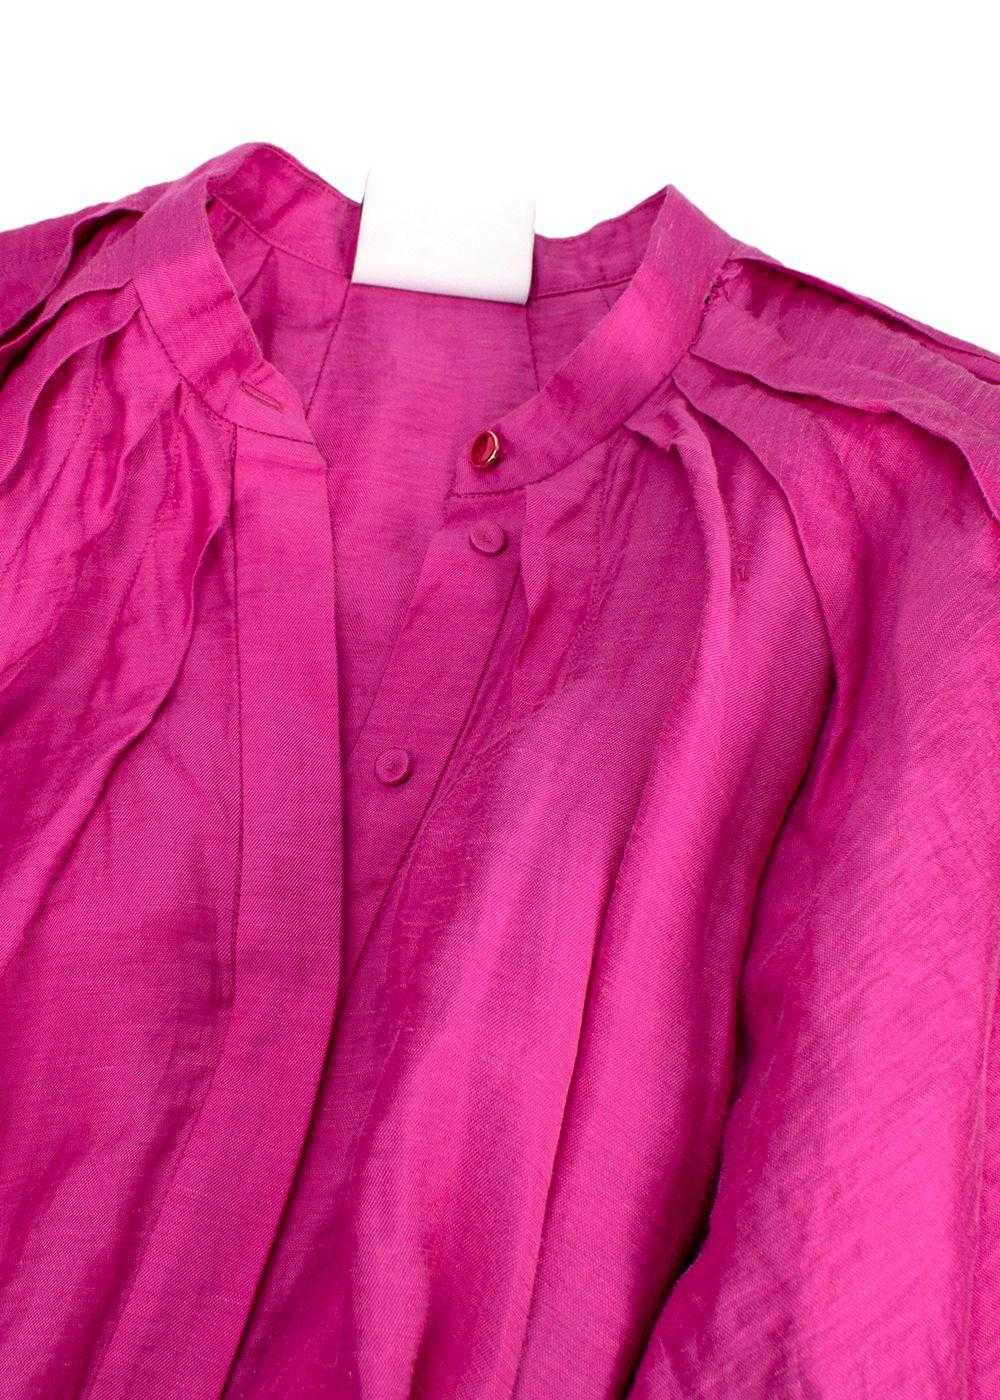 Acler Acler Linen-Blend Cranhurst Midi Dress - image 4